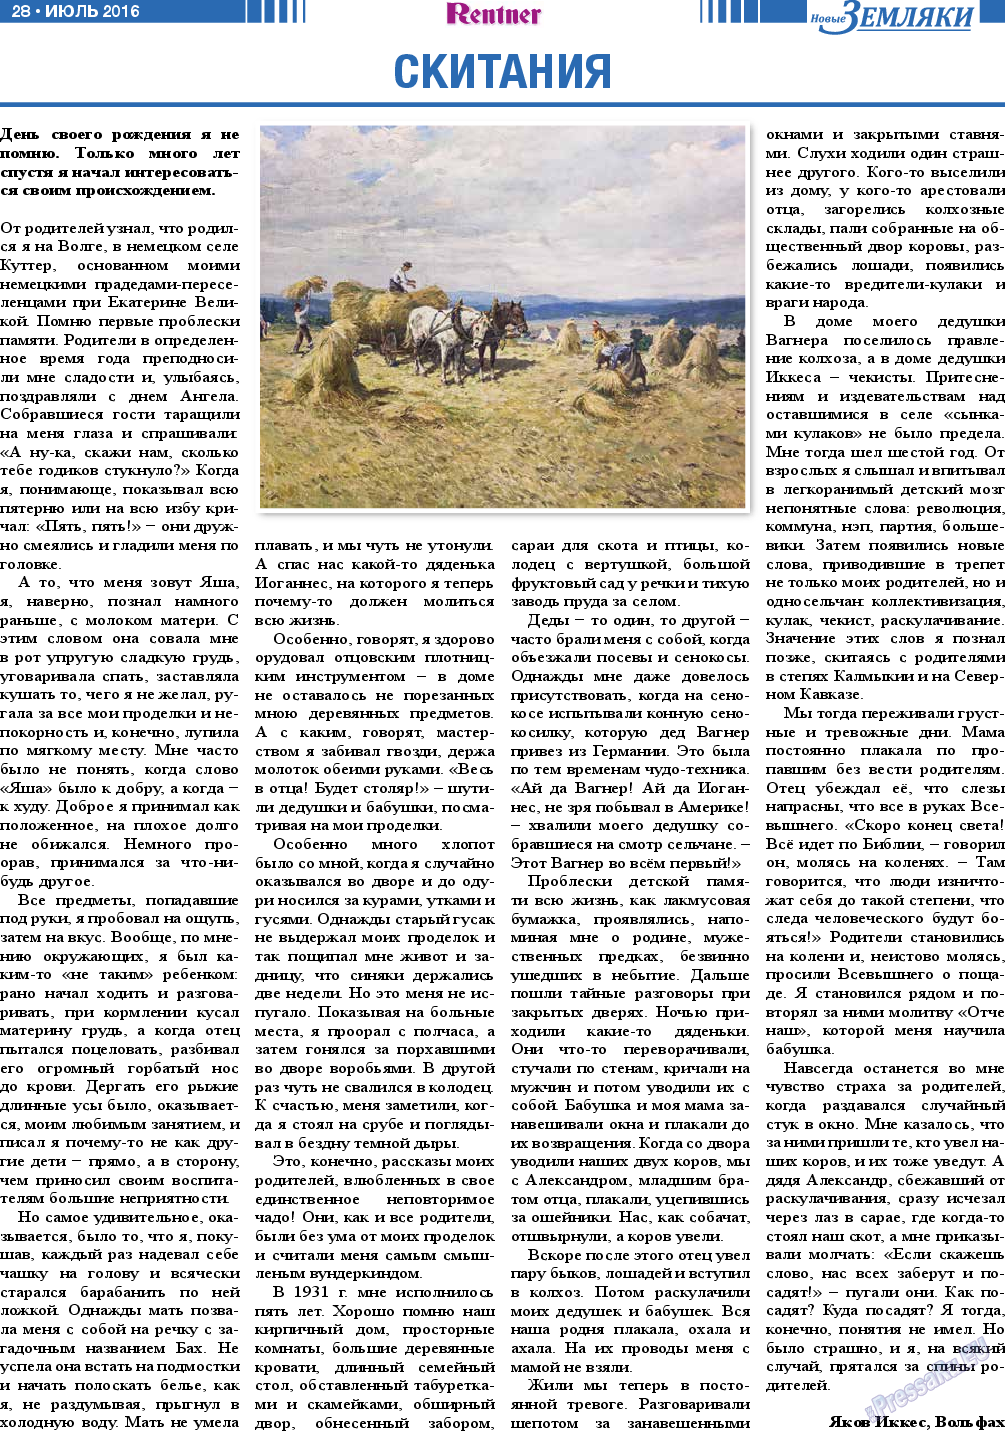 Новые Земляки, газета. 2016 №7 стр.28